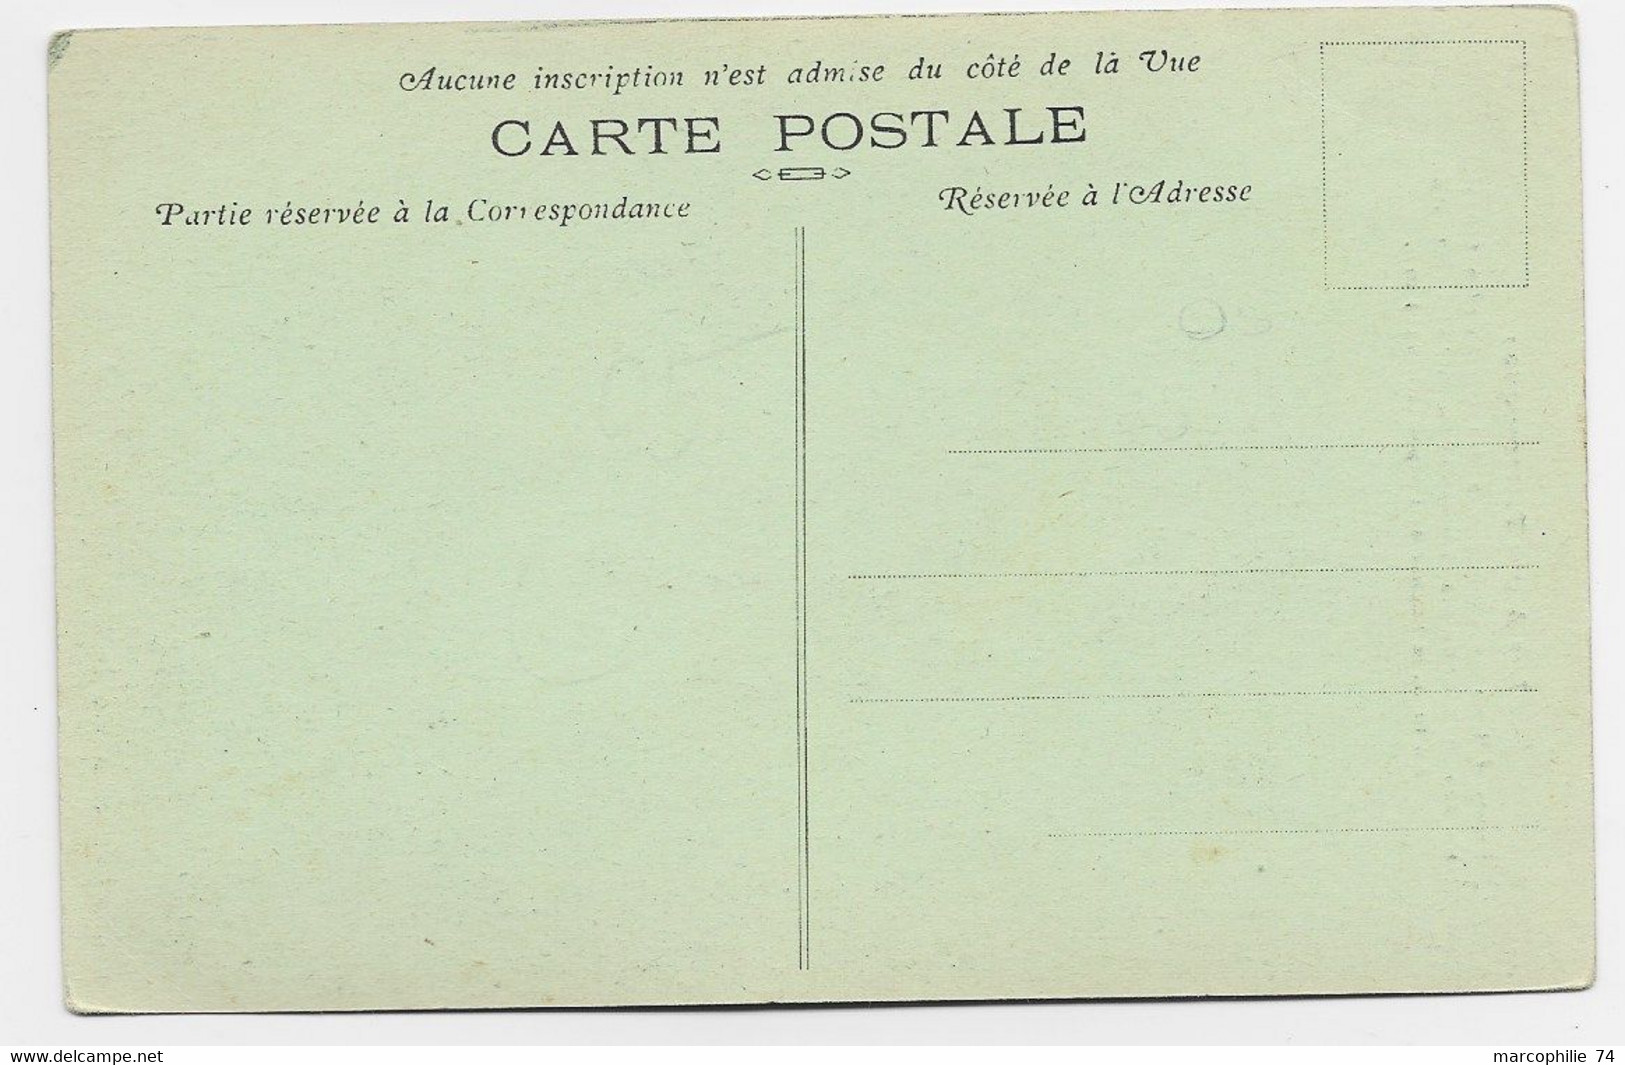 FRANCE CARTE CARD MONTGENEVRE ALPES SPORTS D'HIVER ELIMINATOIRE DES OLYMPIADES 1924 TREMPLIN - Invierno 1924: Chamonix